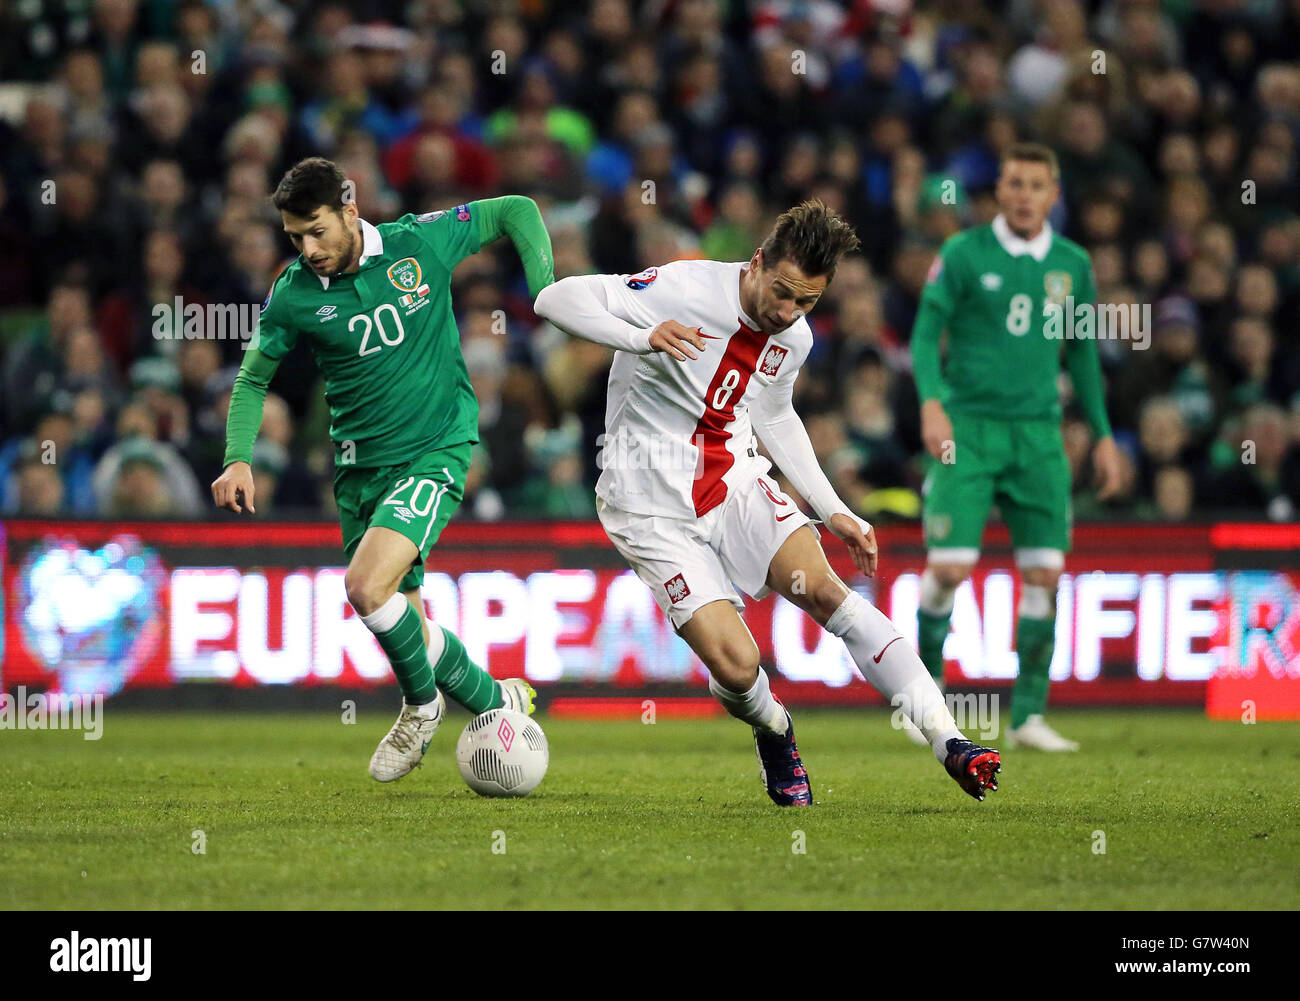 Der irische Wes Hoolahan (links) und der polnische Grzegorz Krychowiak kämpfen während der UEFA Euro 2016 Qualifikation im Aviva Stadium, Dublin, Irland, um den Ball. Stockfoto